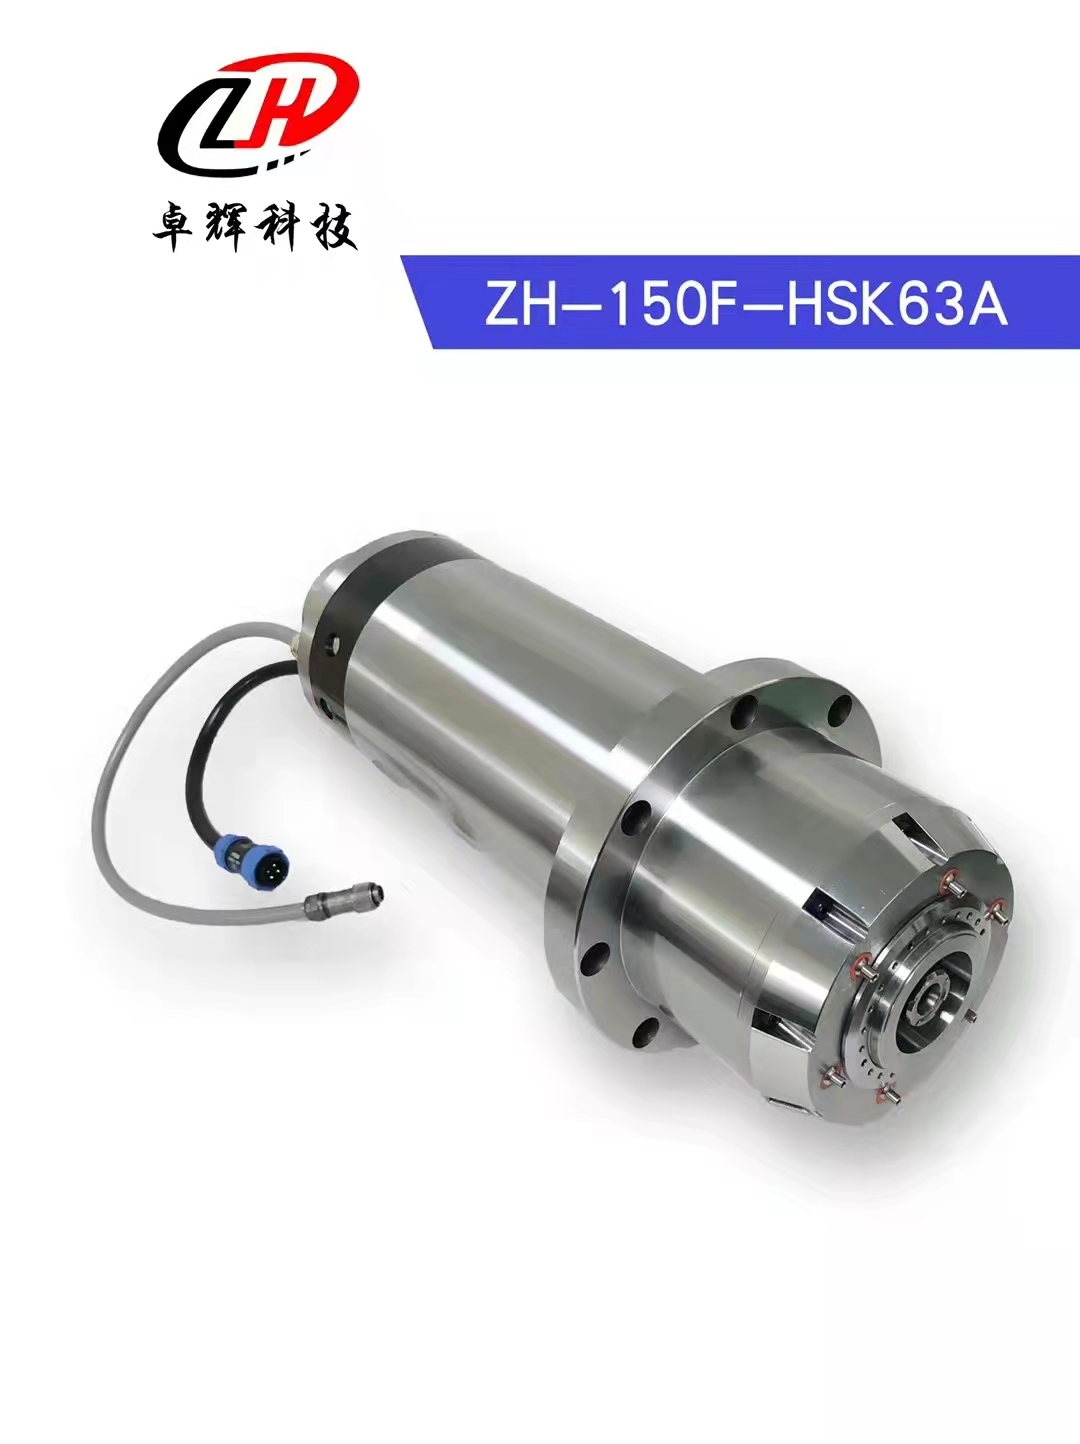 HSK63電主軸